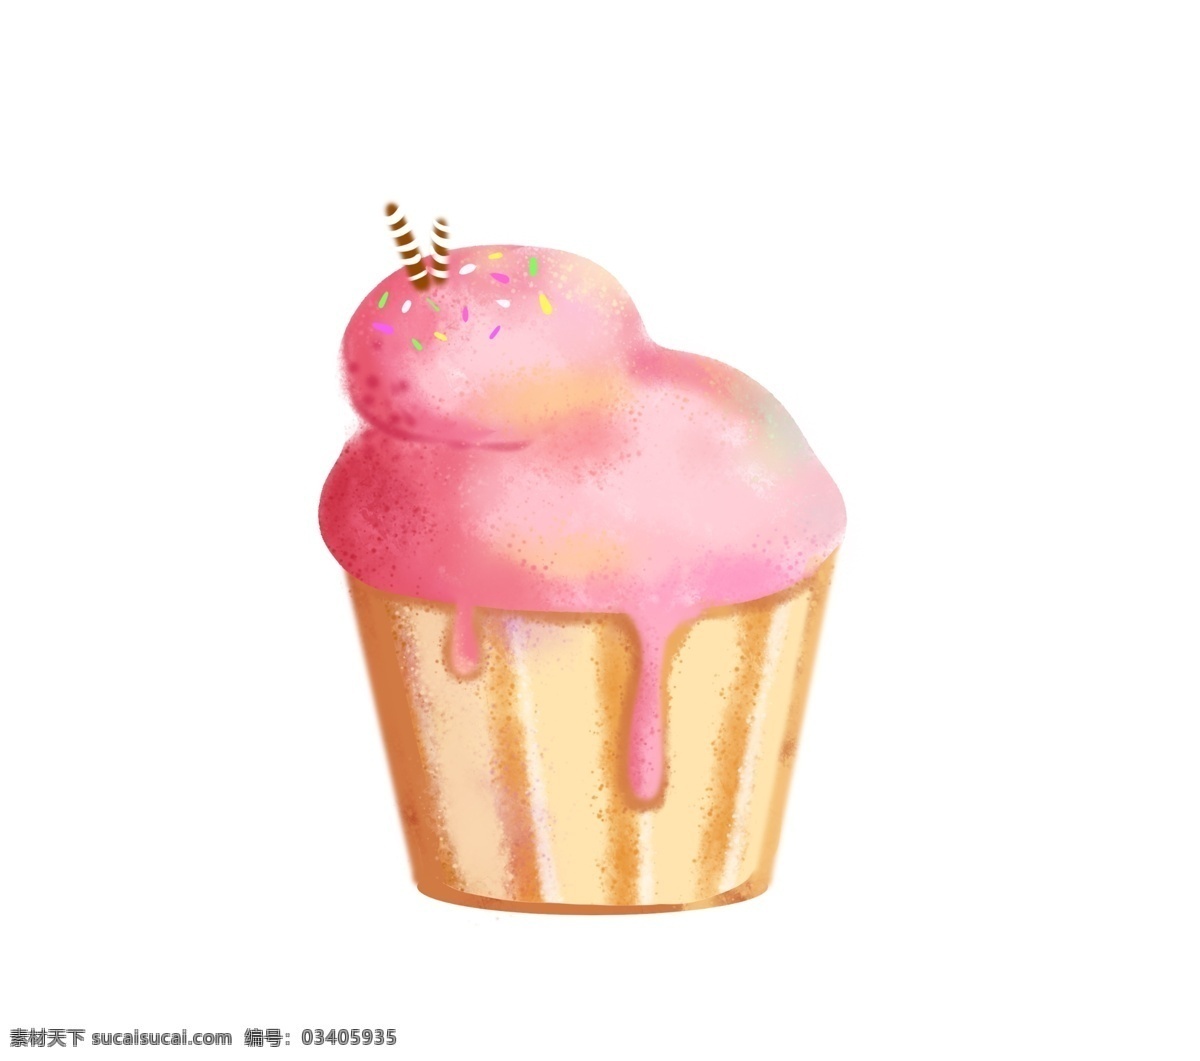 粉色 美味 蛋糕 插画 粉色的蛋糕 卡通插画 美食插画 食物插画 蛋糕插画 糕点插画 巧克力蛋糕